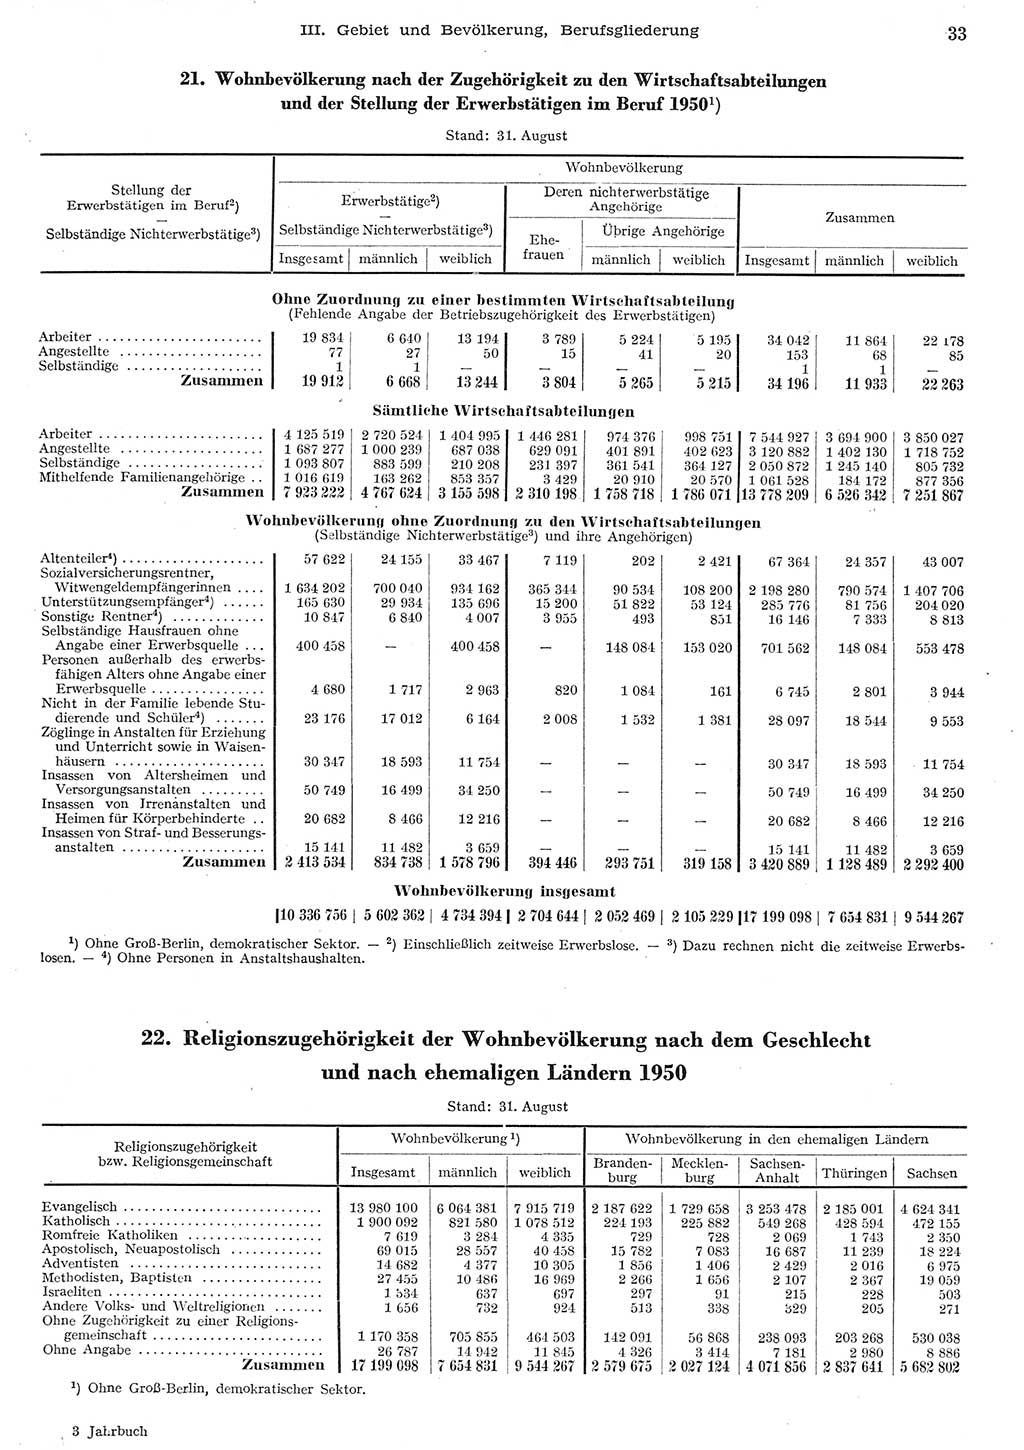 Statistisches Jahrbuch der Deutschen Demokratischen Republik (DDR) 1955, Seite 33 (Stat. Jb. DDR 1955, S. 33)